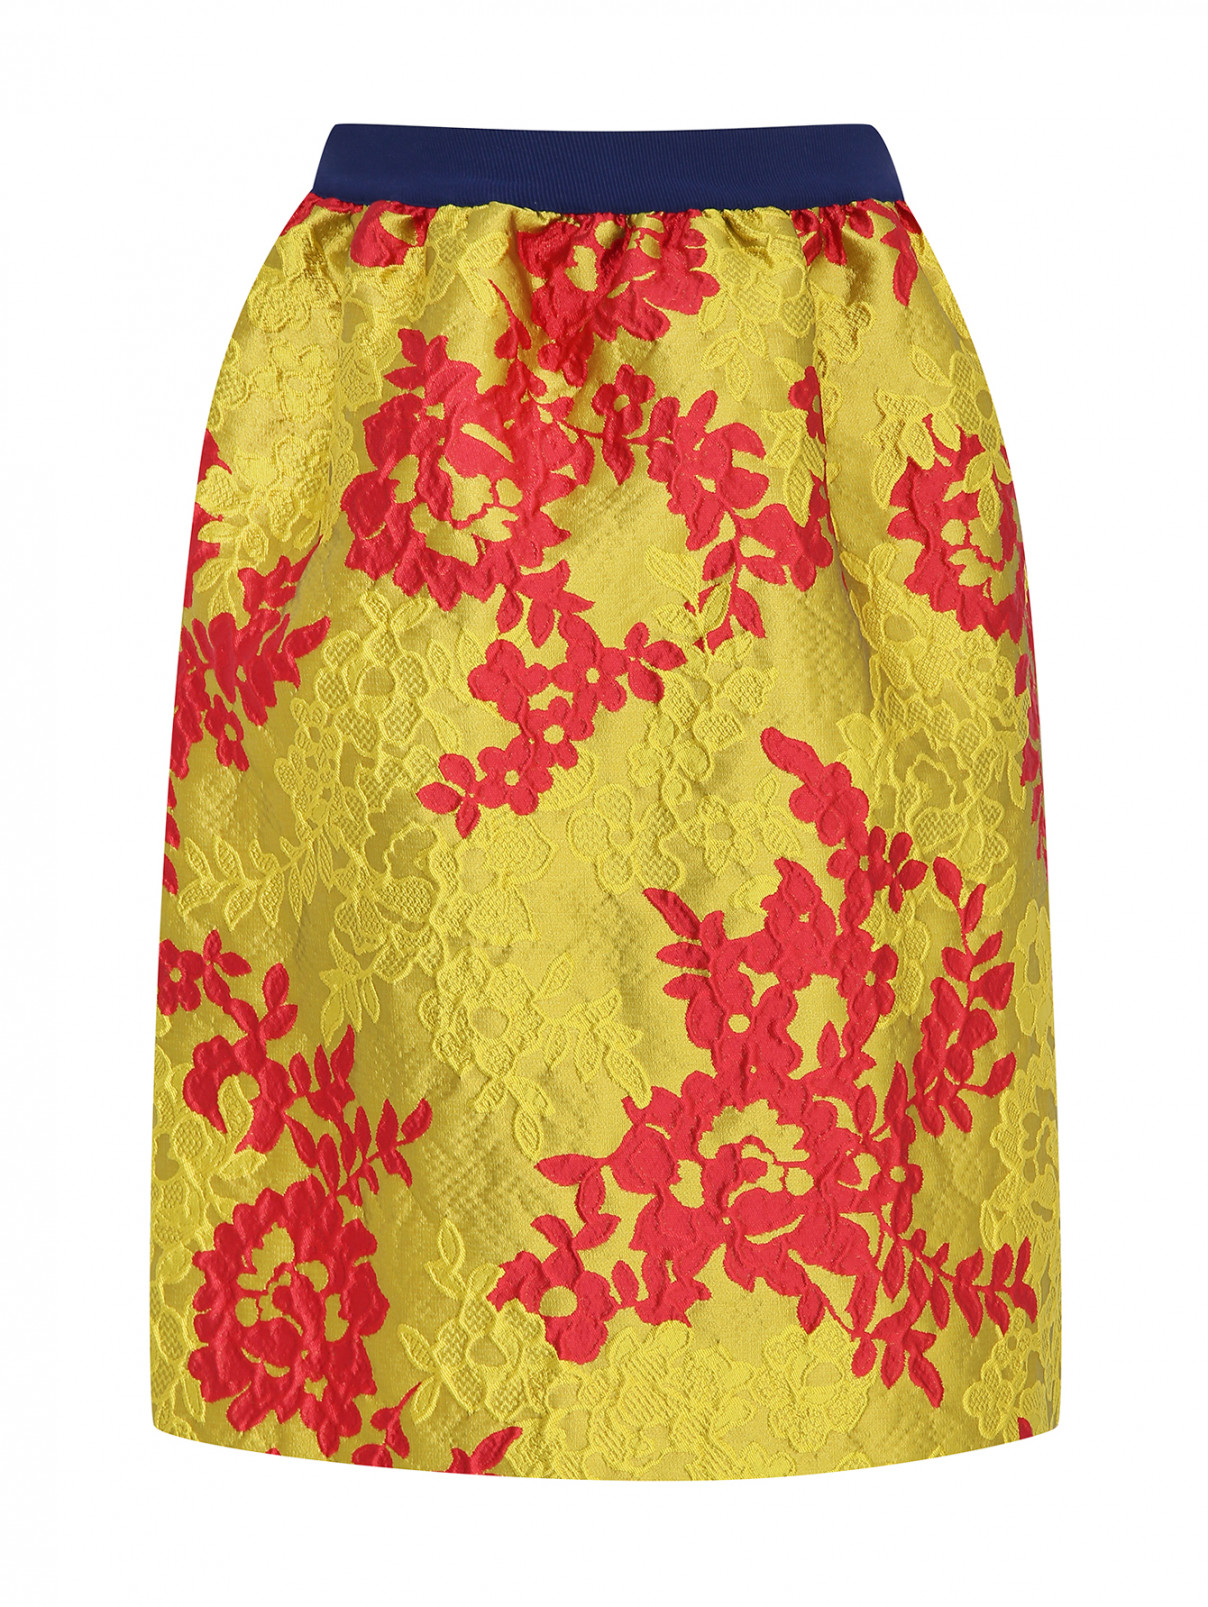 Юбка из жаккардовой ткани на резинке MiMiSol  –  Общий вид  – Цвет:  Желтый